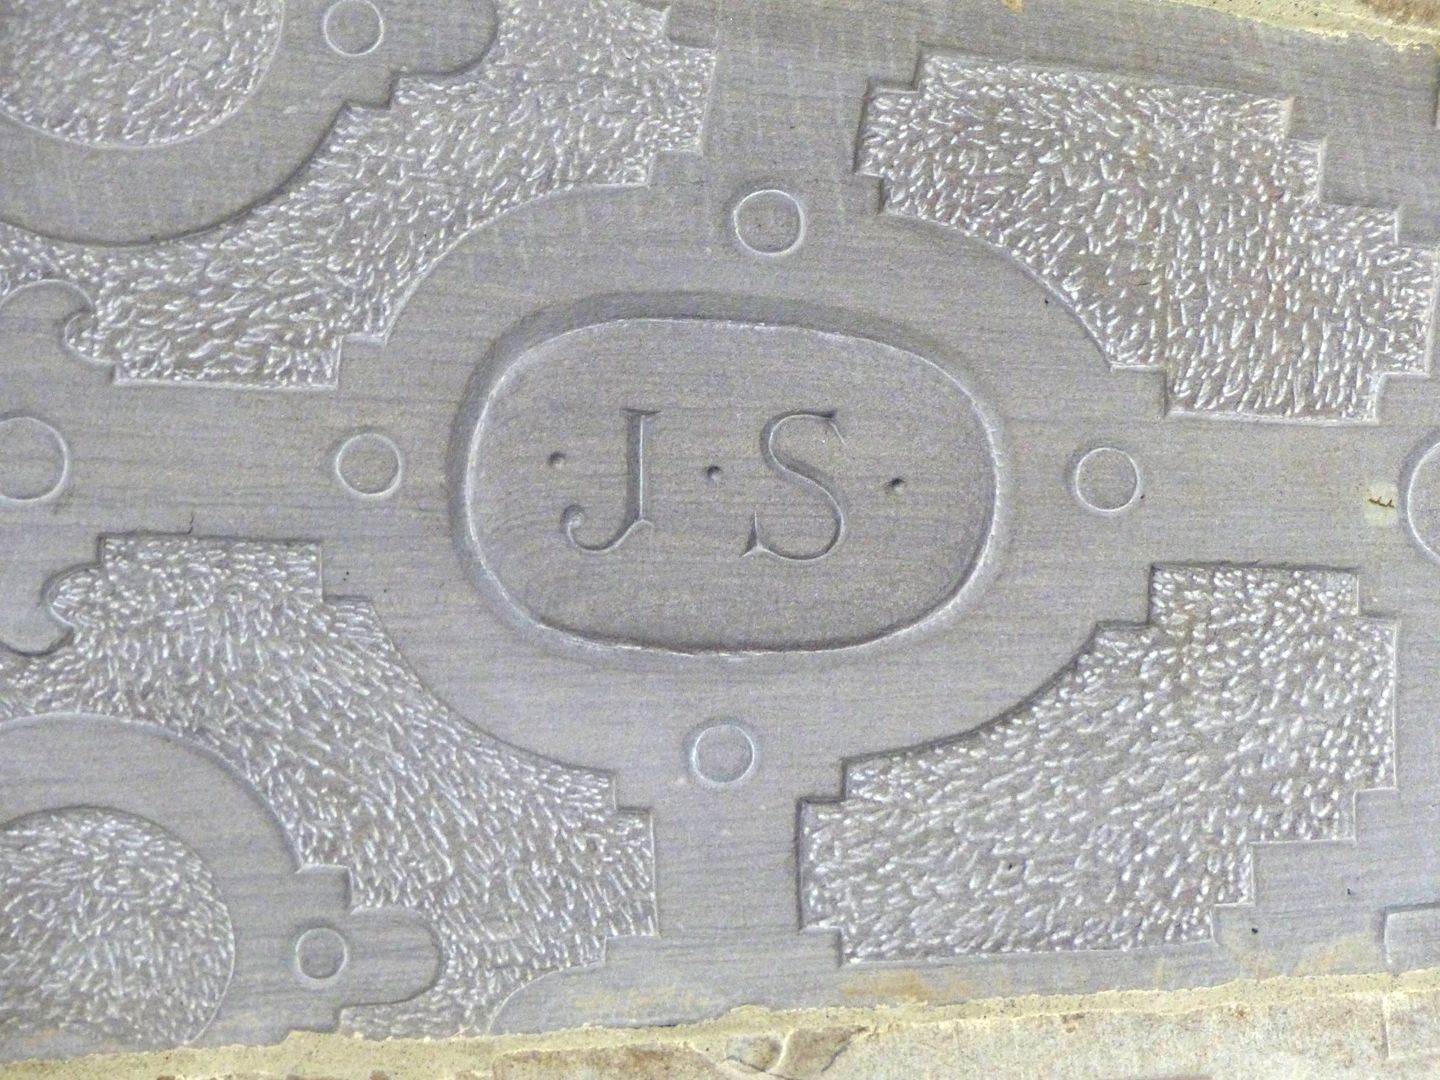 Treppentyp / Pellerhaus Straßburg: Buchstaben J.S. für Jakob Sturm (Unterseite erneuert)